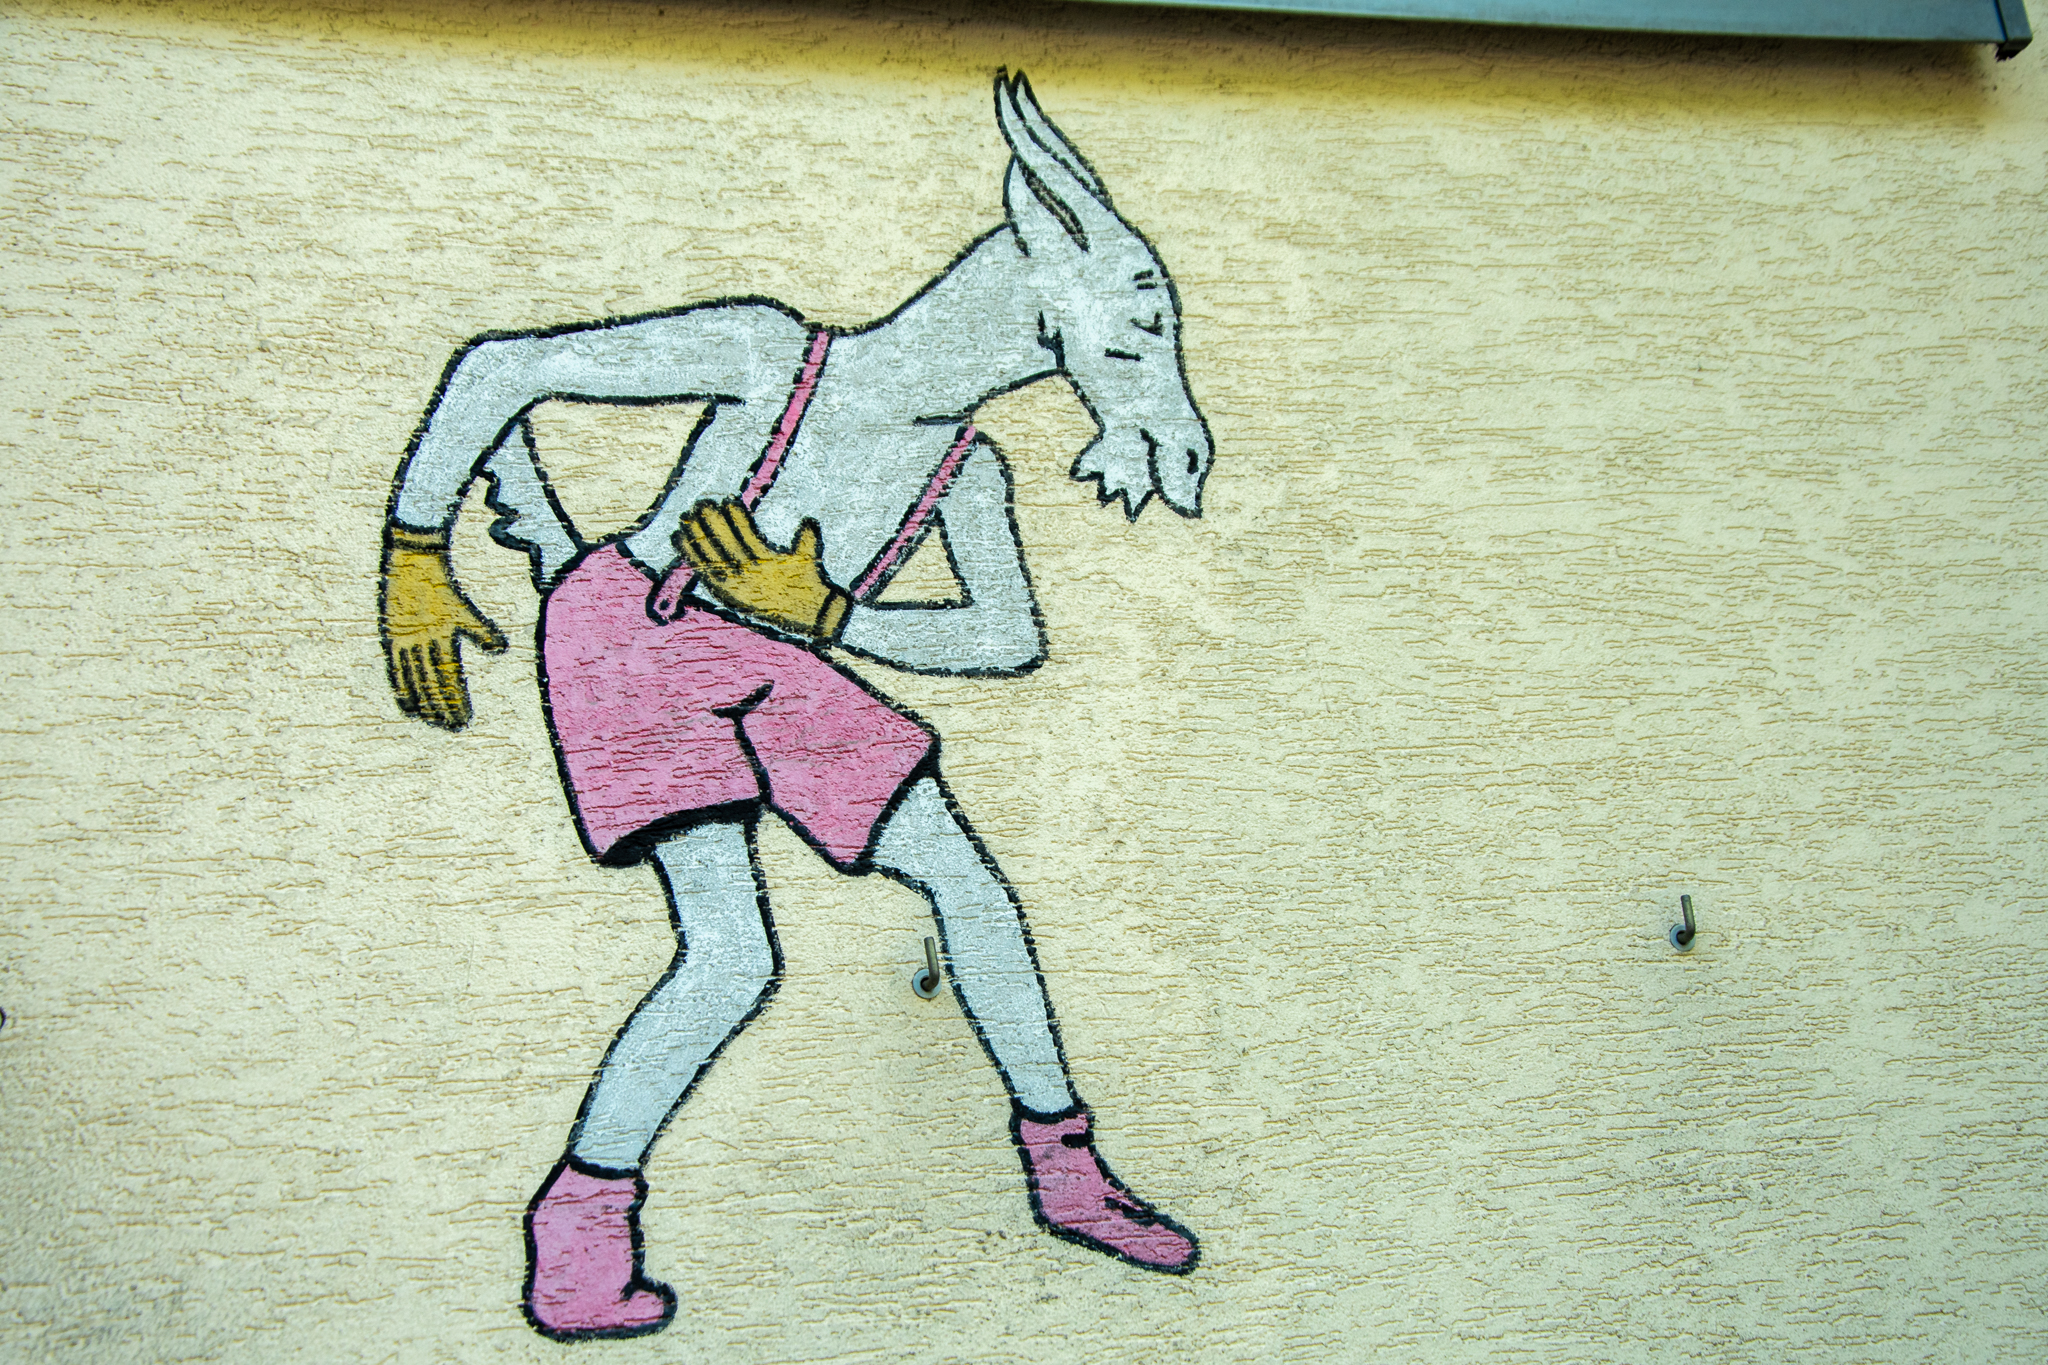 Koziołek Matołek namalowany na murze domu, kłaniający się w pas.